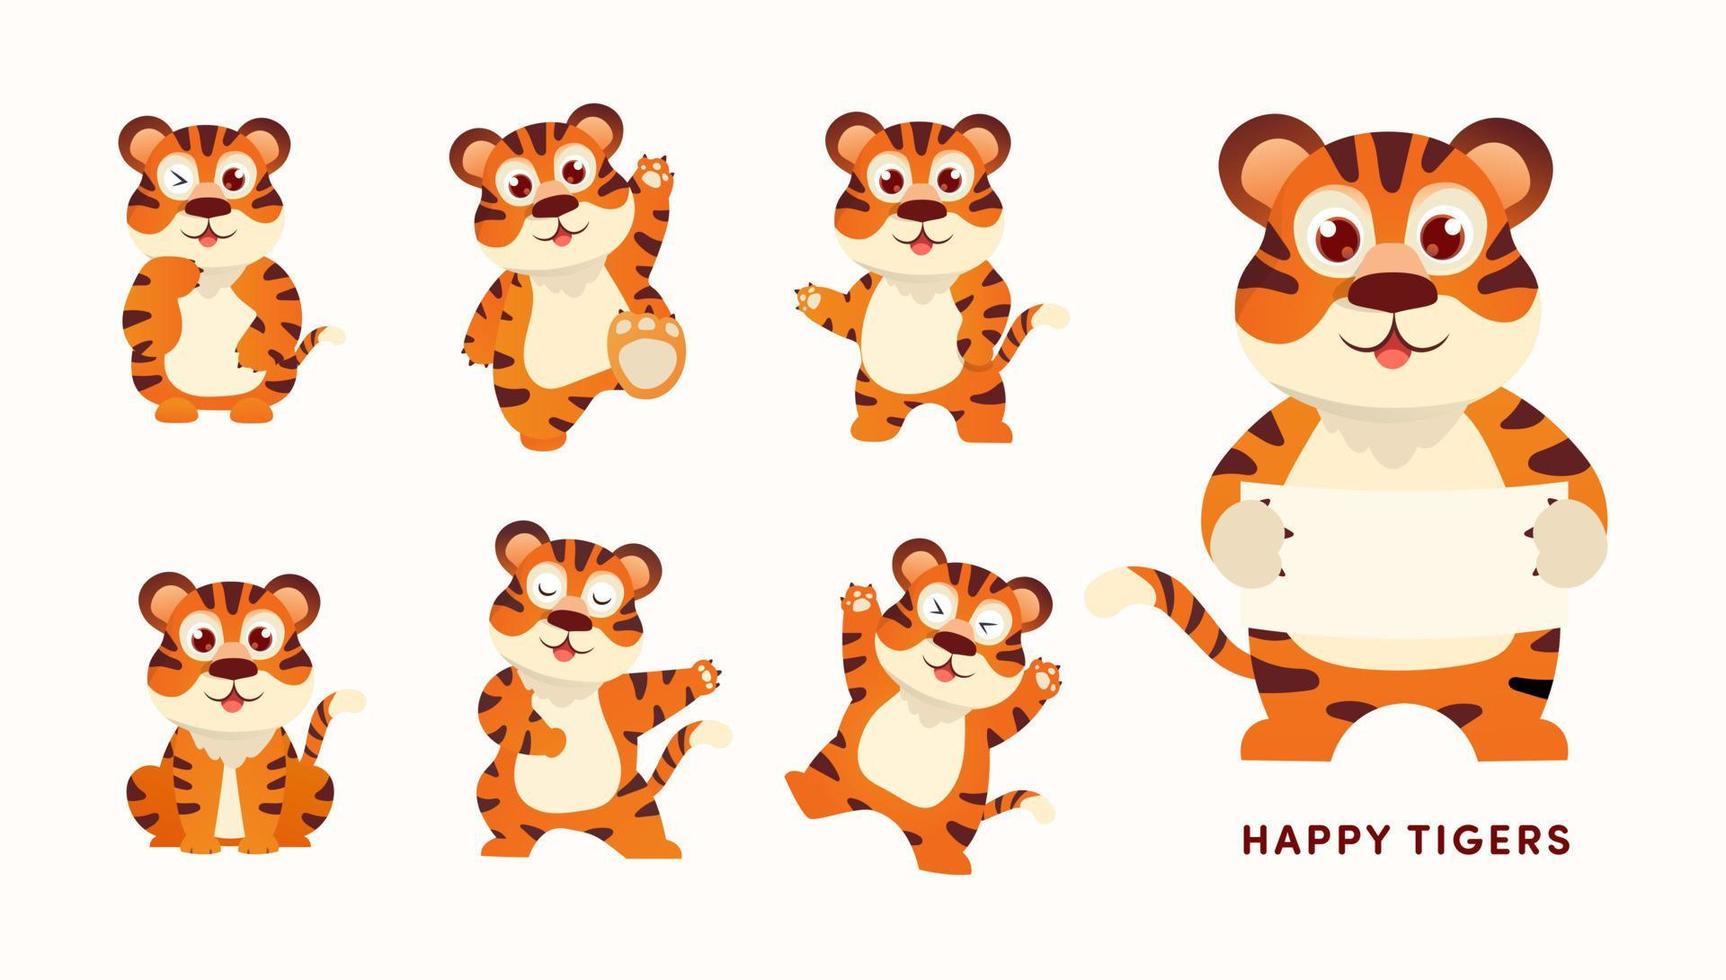 simpatico personaggio dei cartoni animati della tigre, animale divertente. felice anno nuovo cinese 2022. illustrazione vettoriale